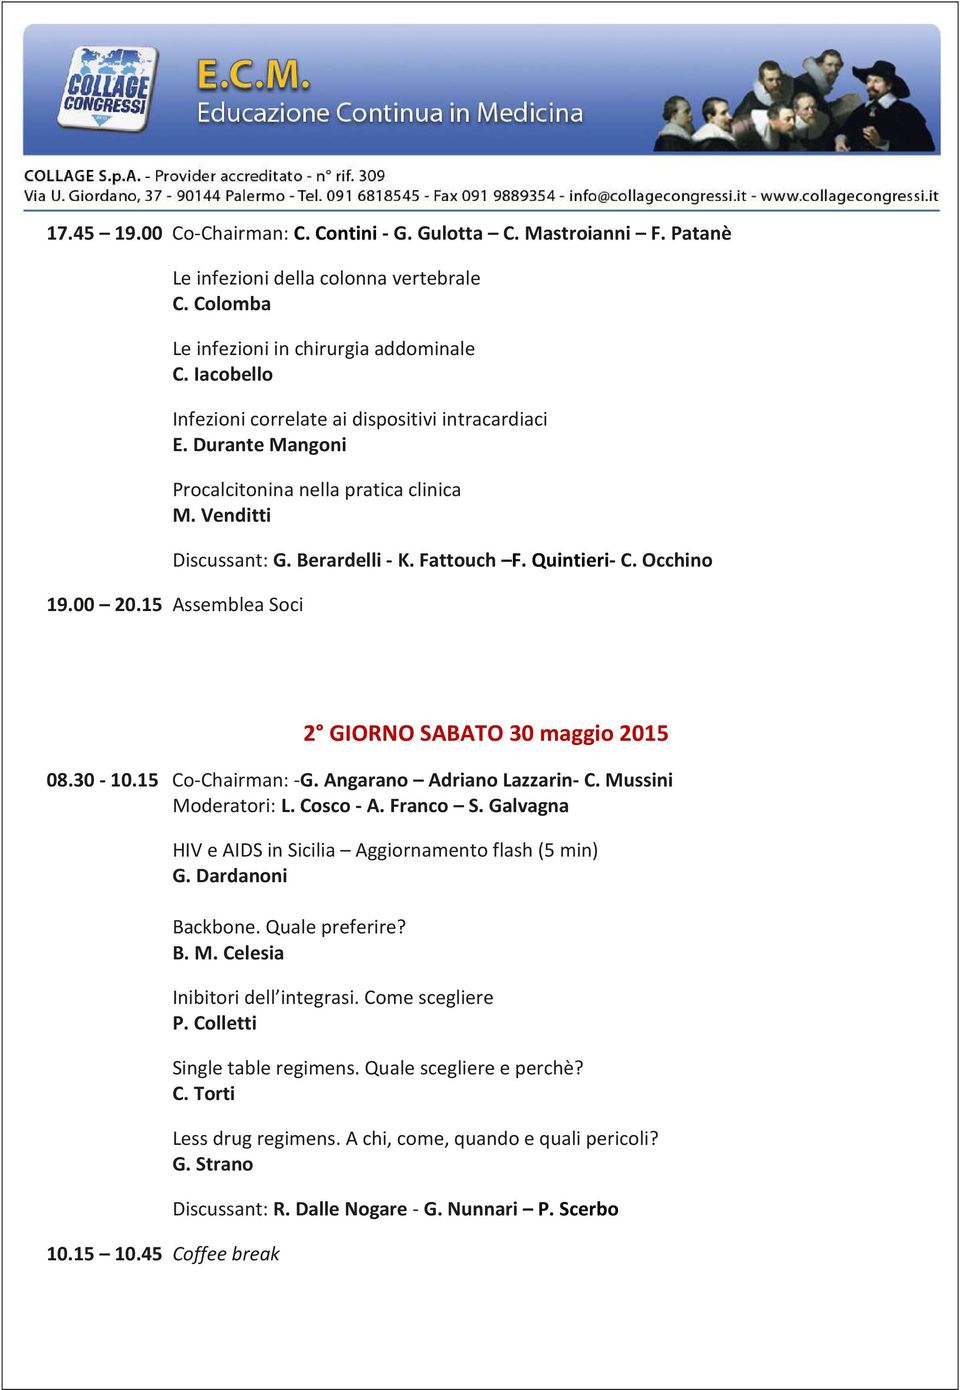 00 20.15 Assemblea Soci 2 GIORNO SABATO 30 maggio 2015 08.30-10.15 Co-Chairman: -G. Angarano Adriano Lazzarin- C. Mussini Moderatori: L. Cosco - A. Franco S. Galvagna 10.15 10.